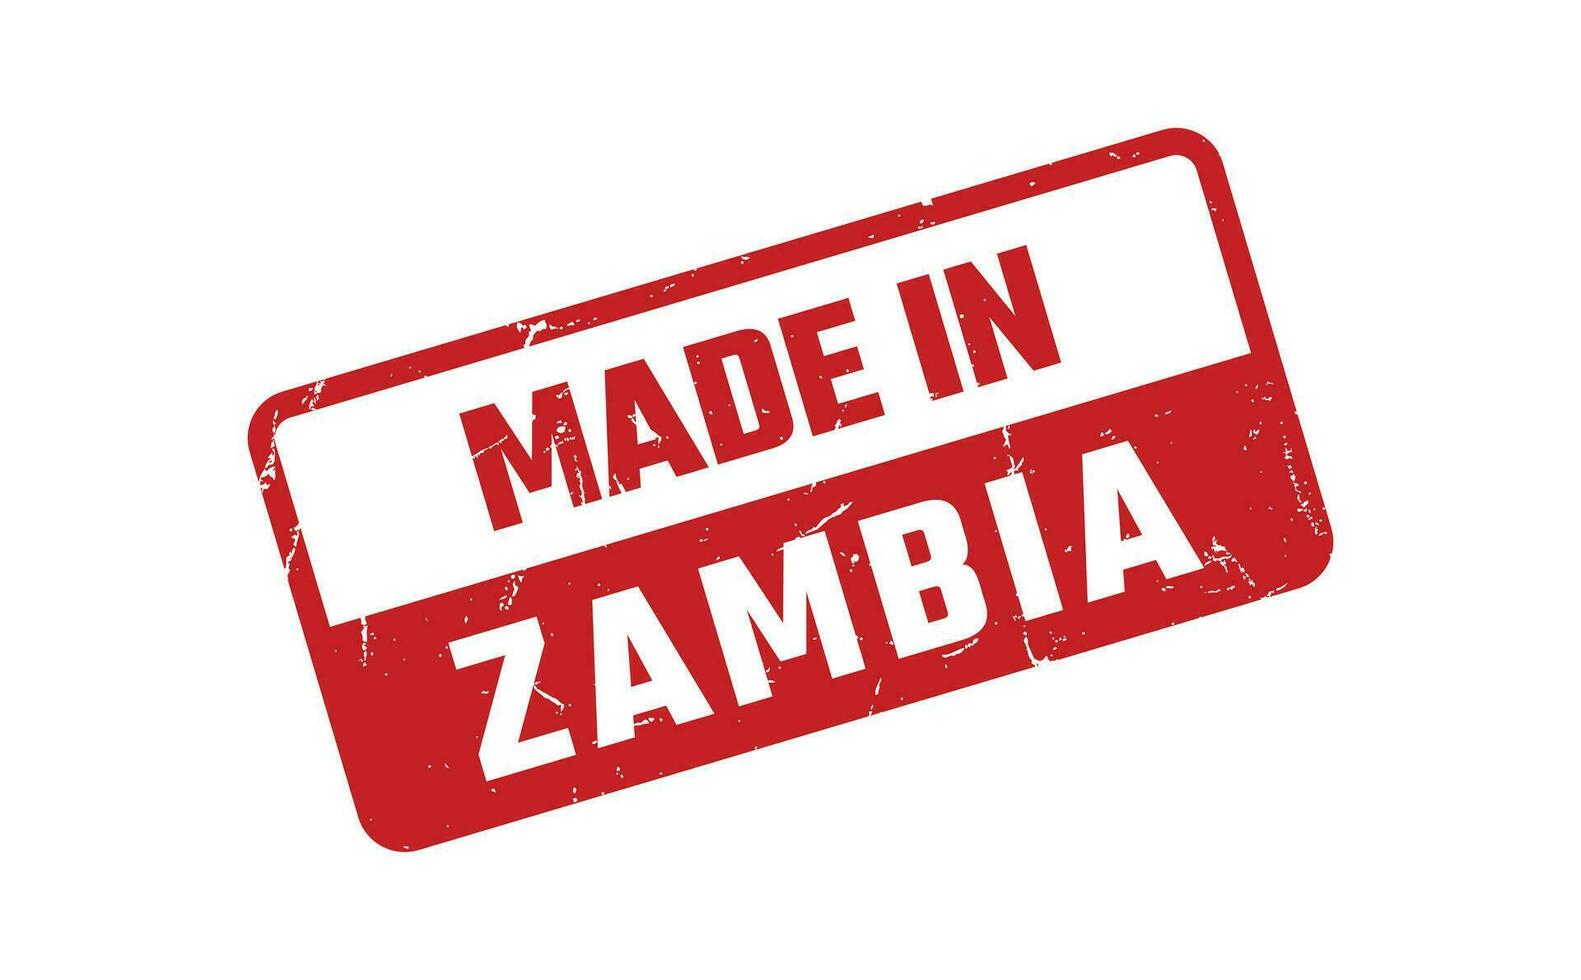 gemaakt in Zambia rubber postzegel vector